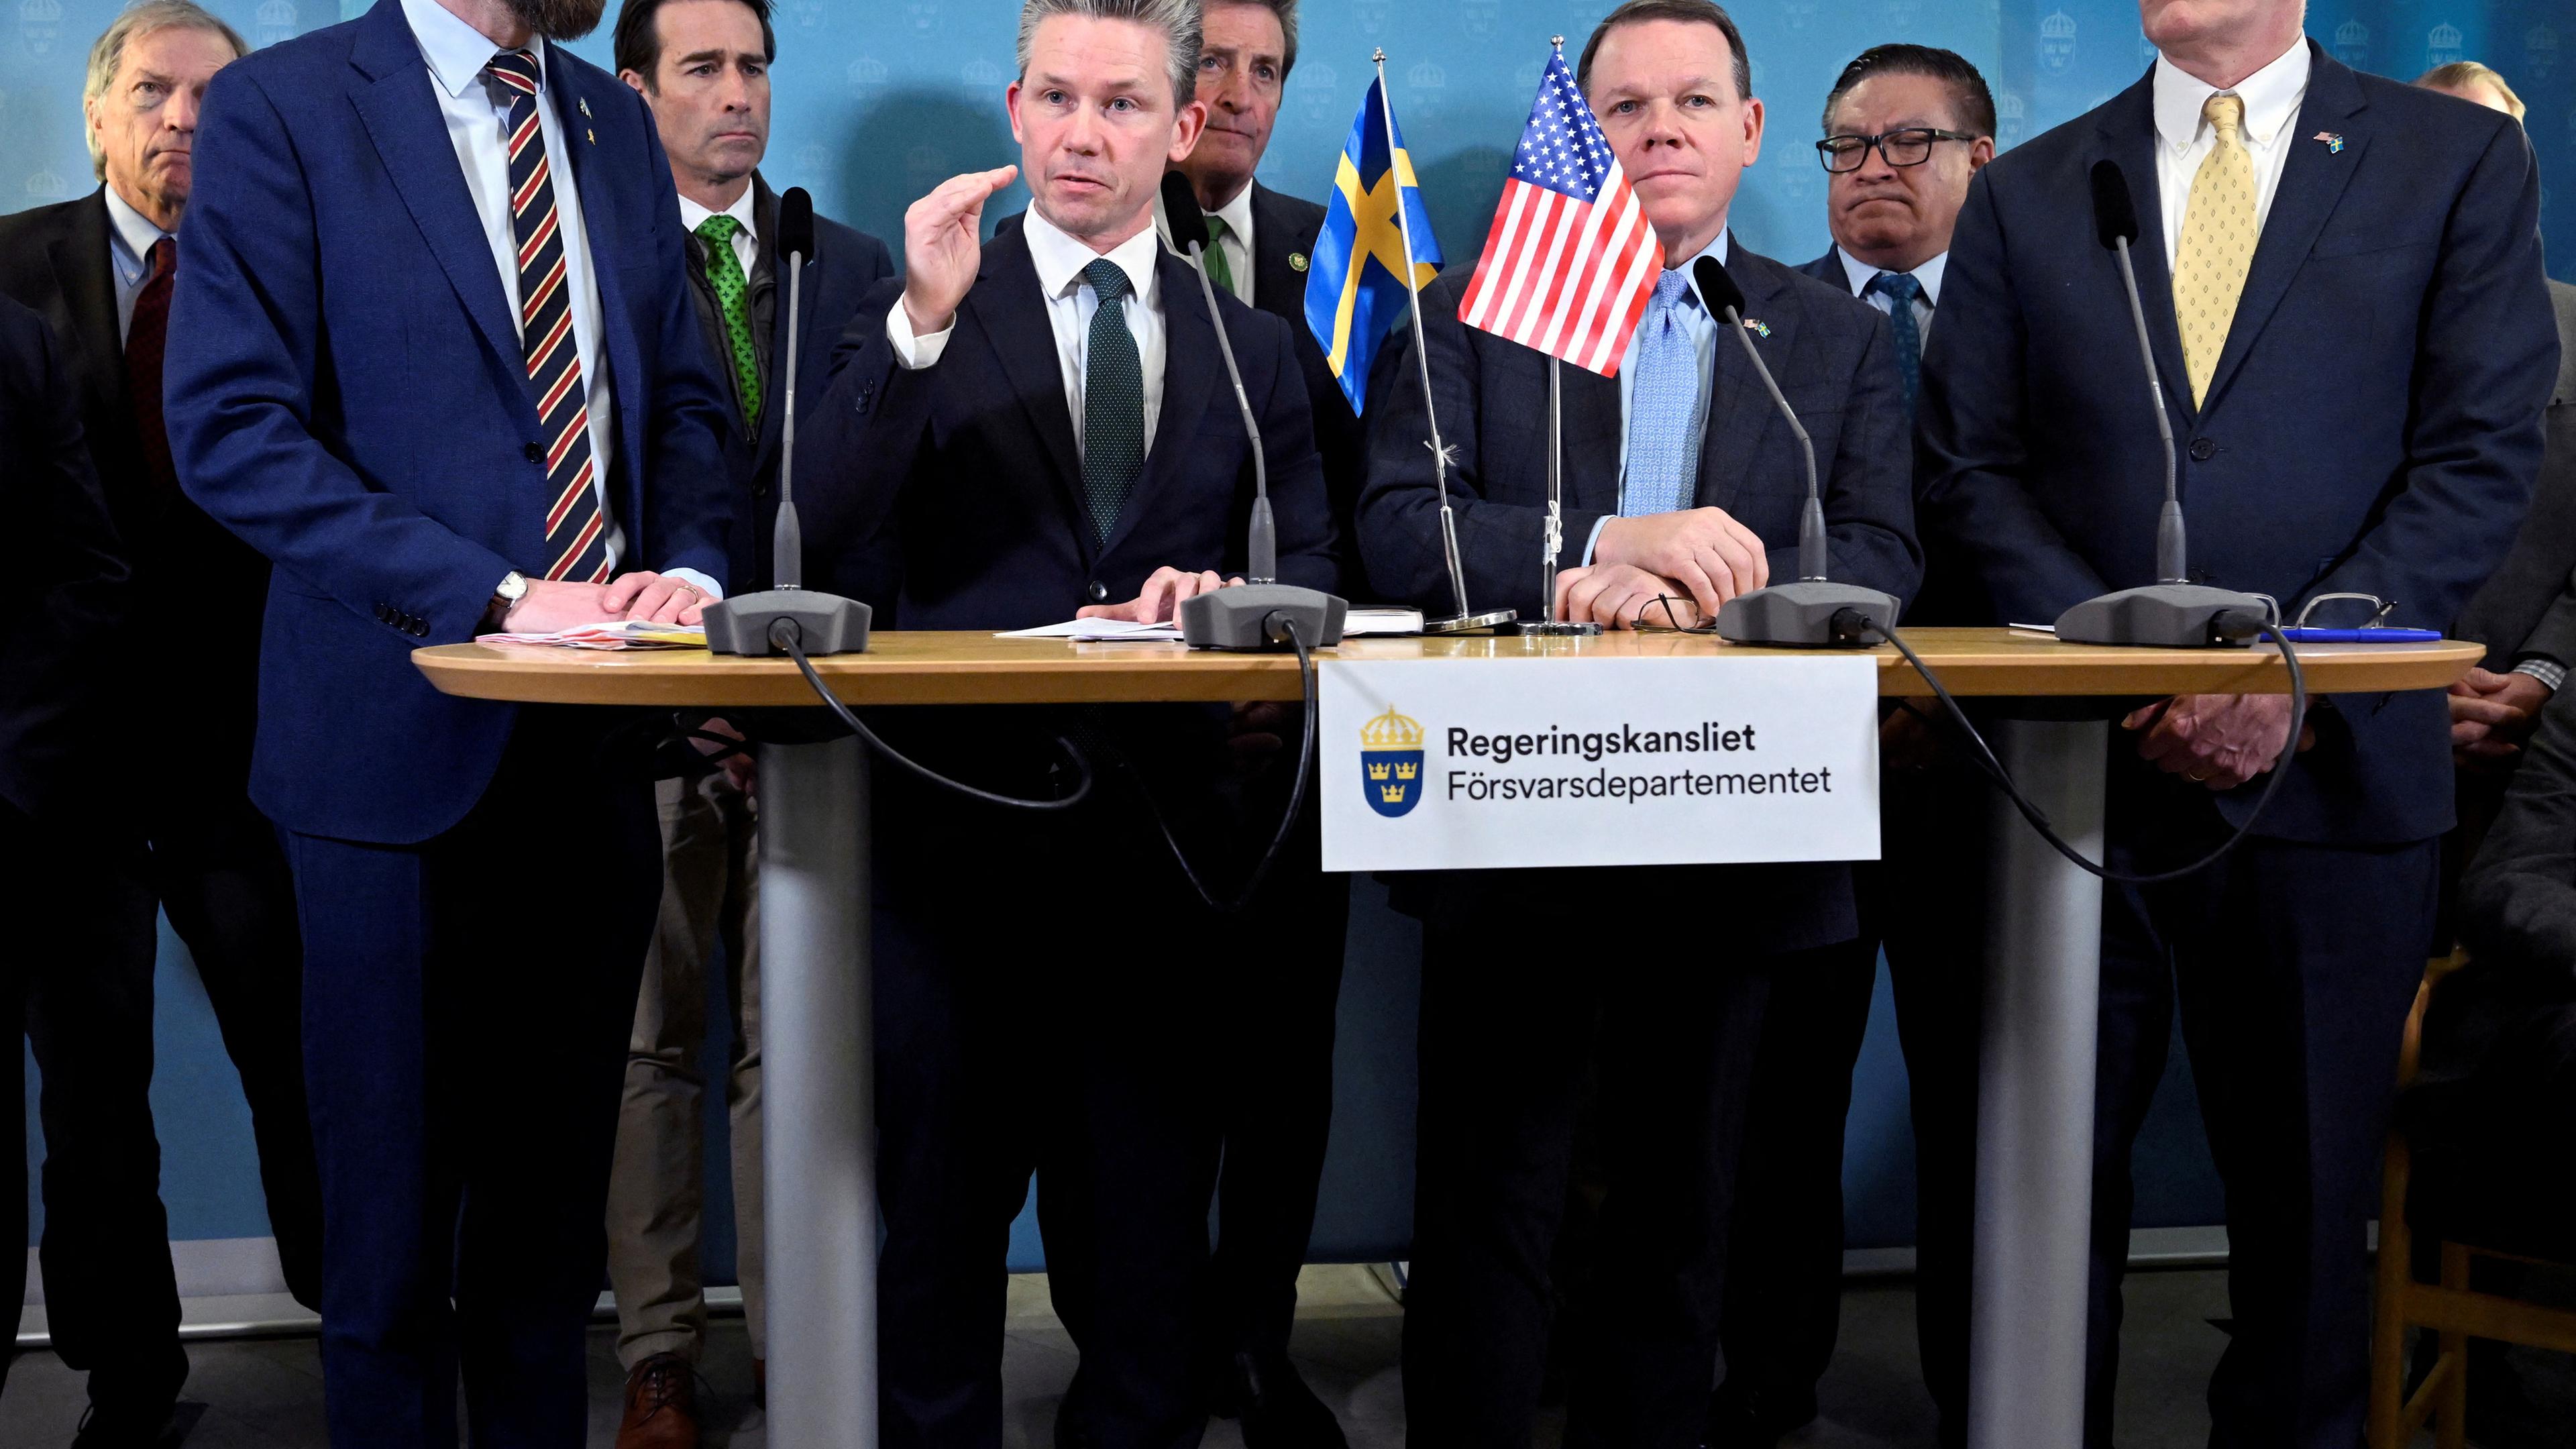 Sweden, Stockholm, Pressekonferenz über den NATO-Beitritt Schwedens